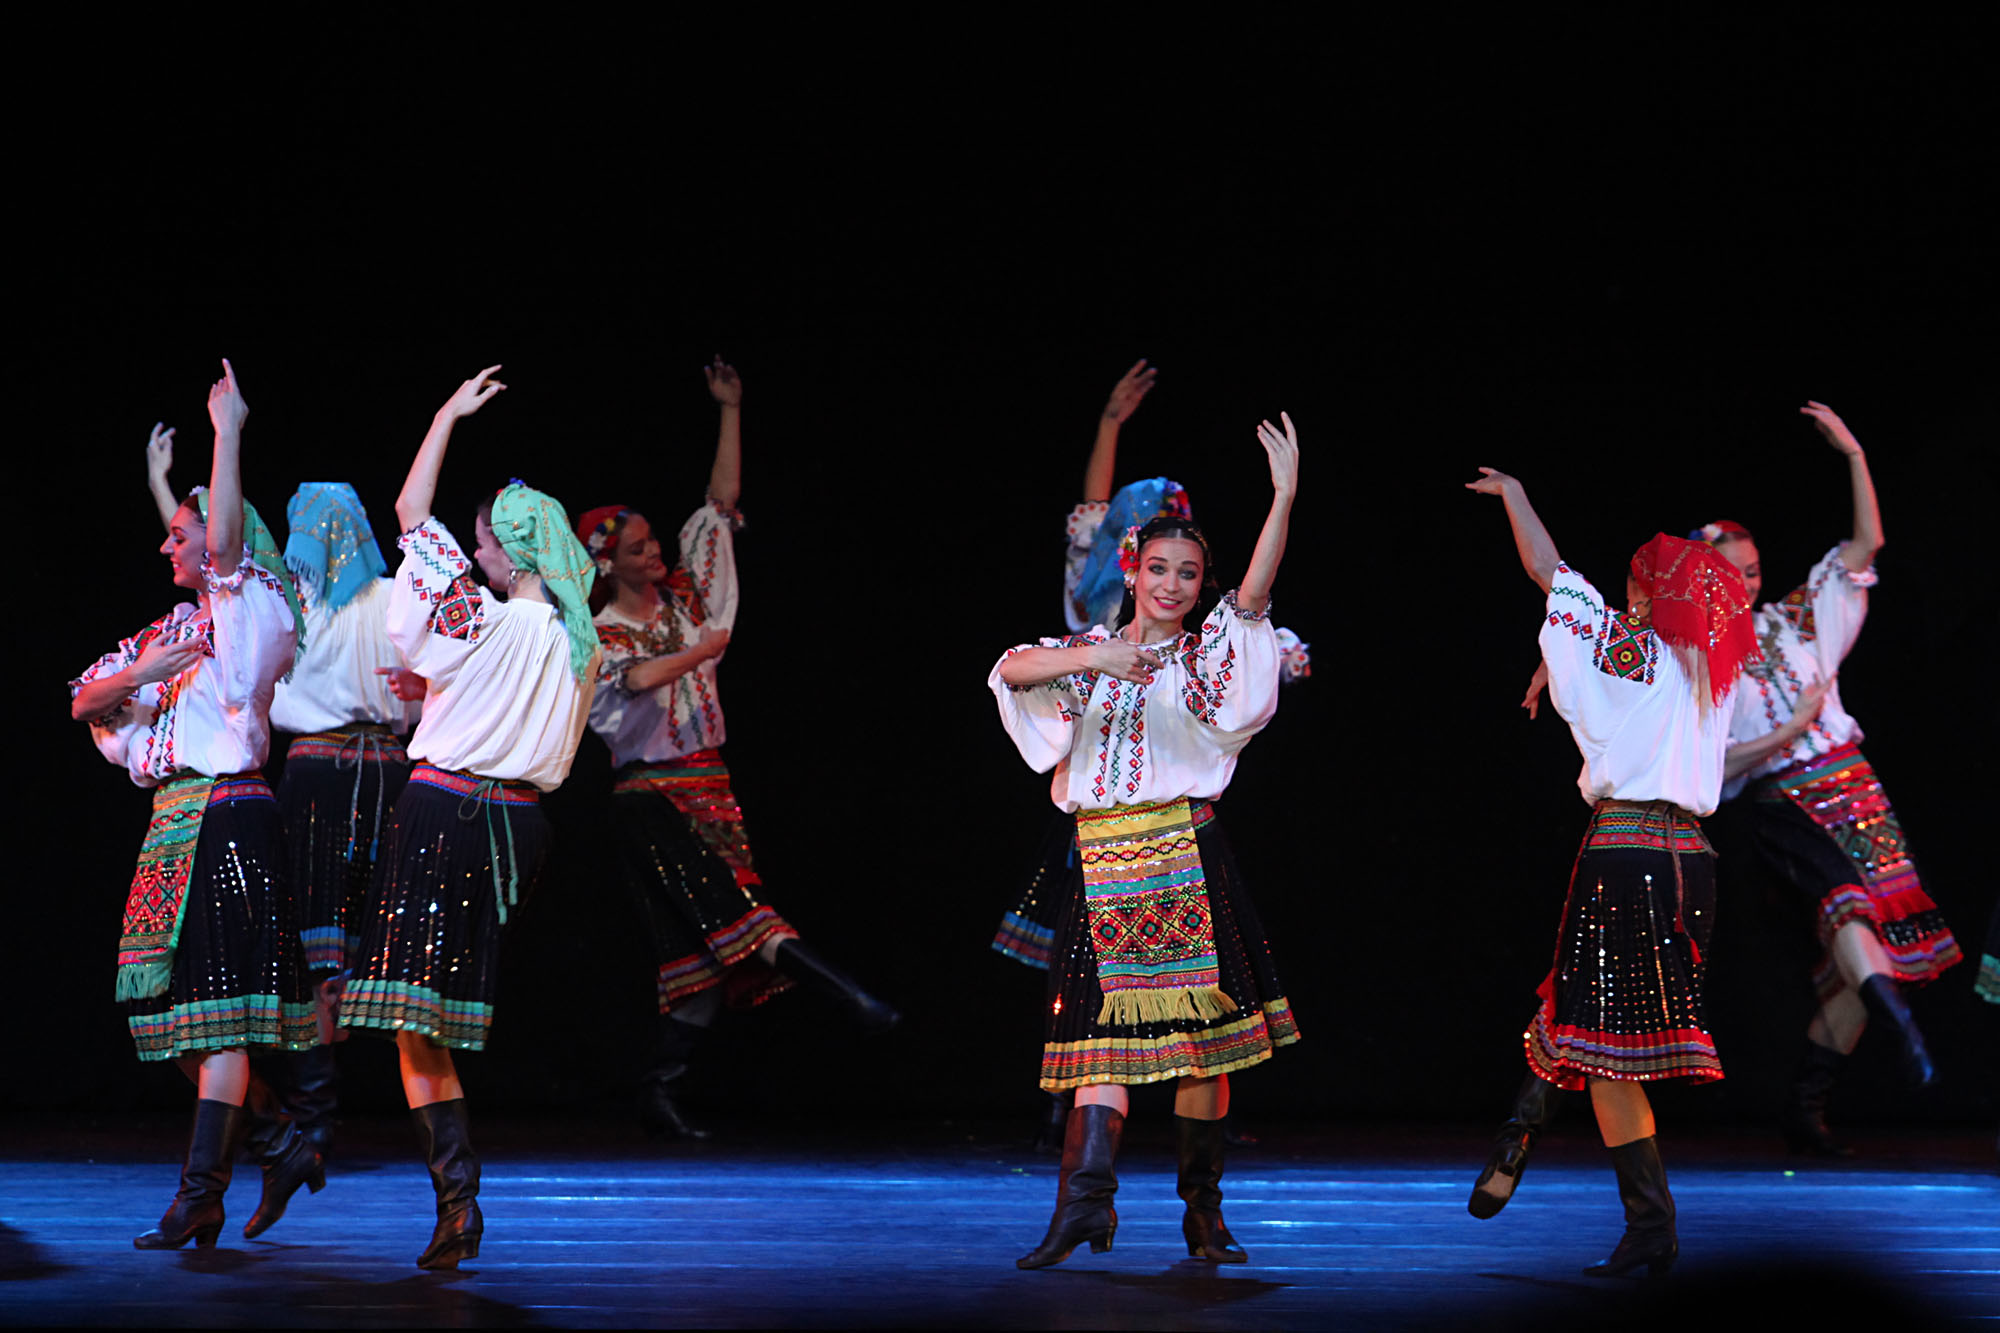 Repertoar ansambel ini mencakup berbagai tarian asal Rusia, Ukraina, Belarus, Moldova, Lituania, dan lain-lain. Kelompok ini juga menampilkan tarian Tatar Krimea dan bahkan tarian-tarian asal Amerika Latin.